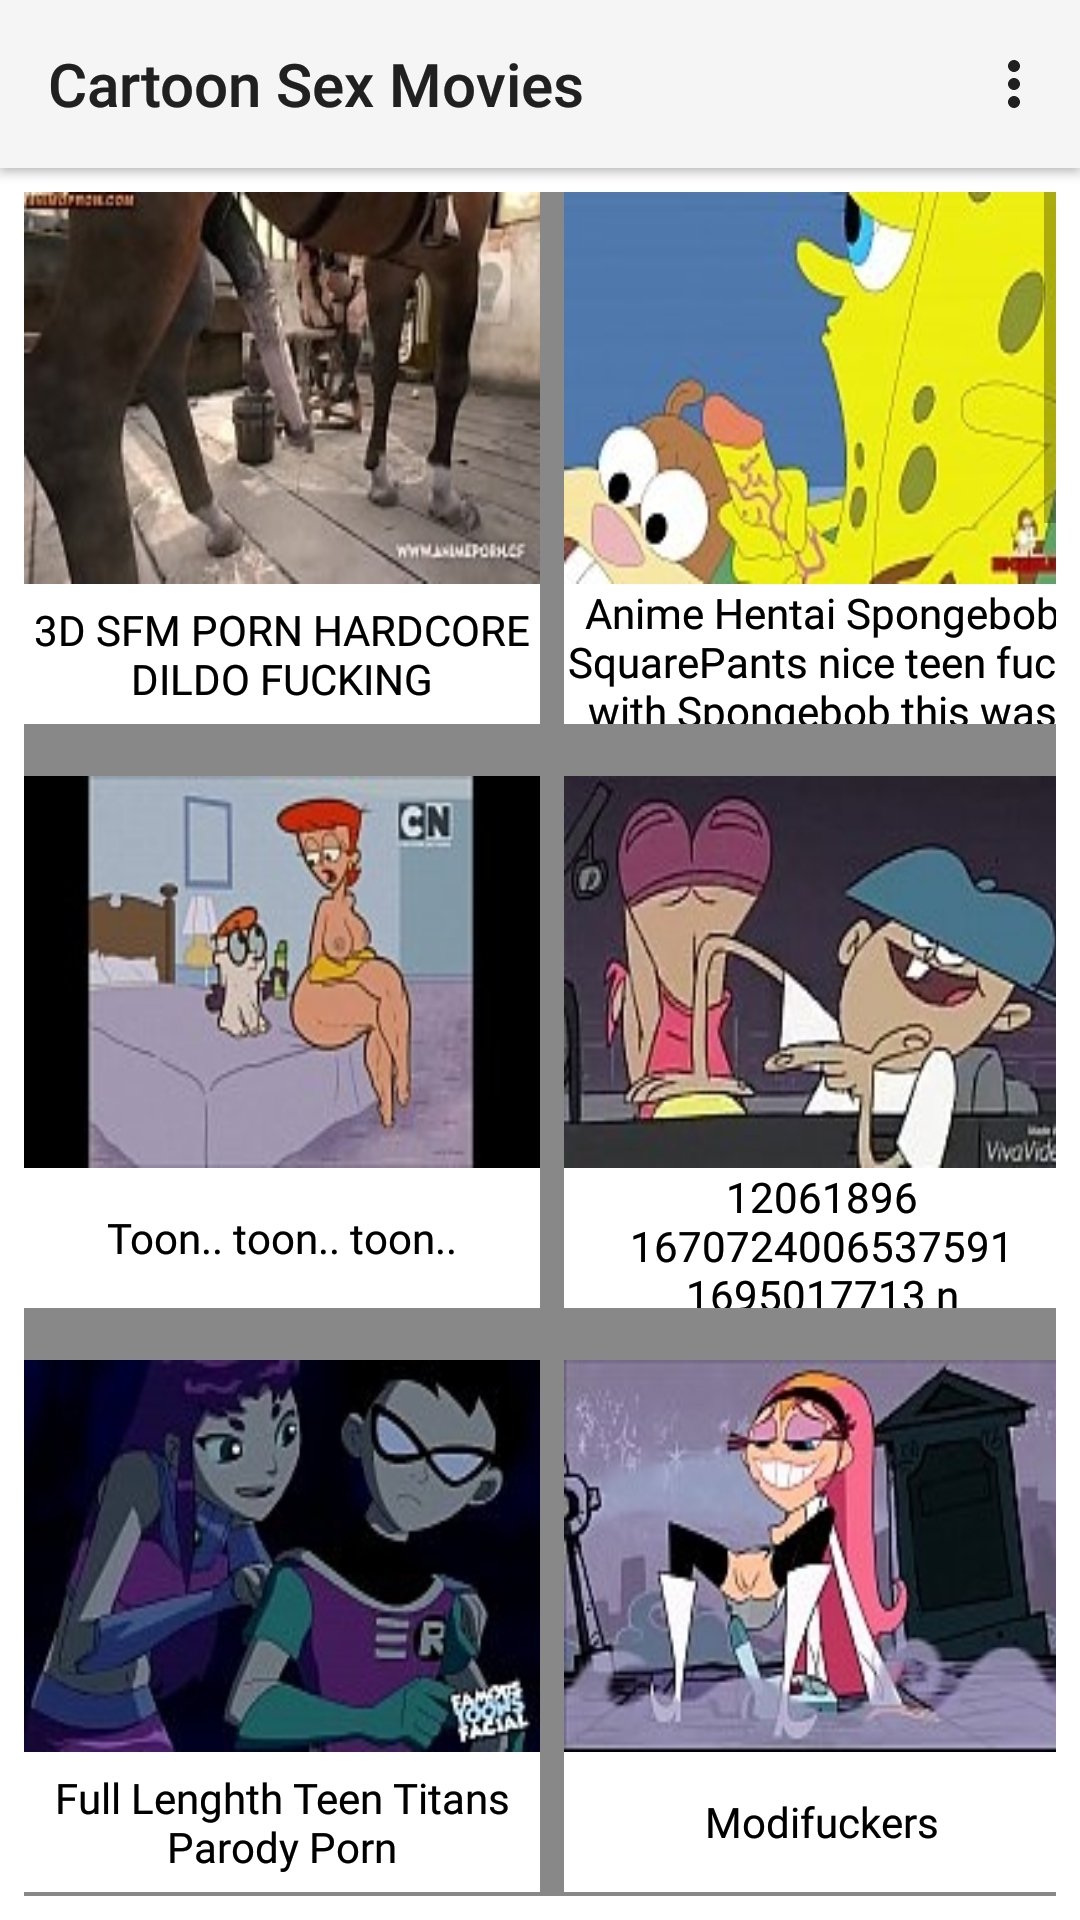 Cartoon sex movies